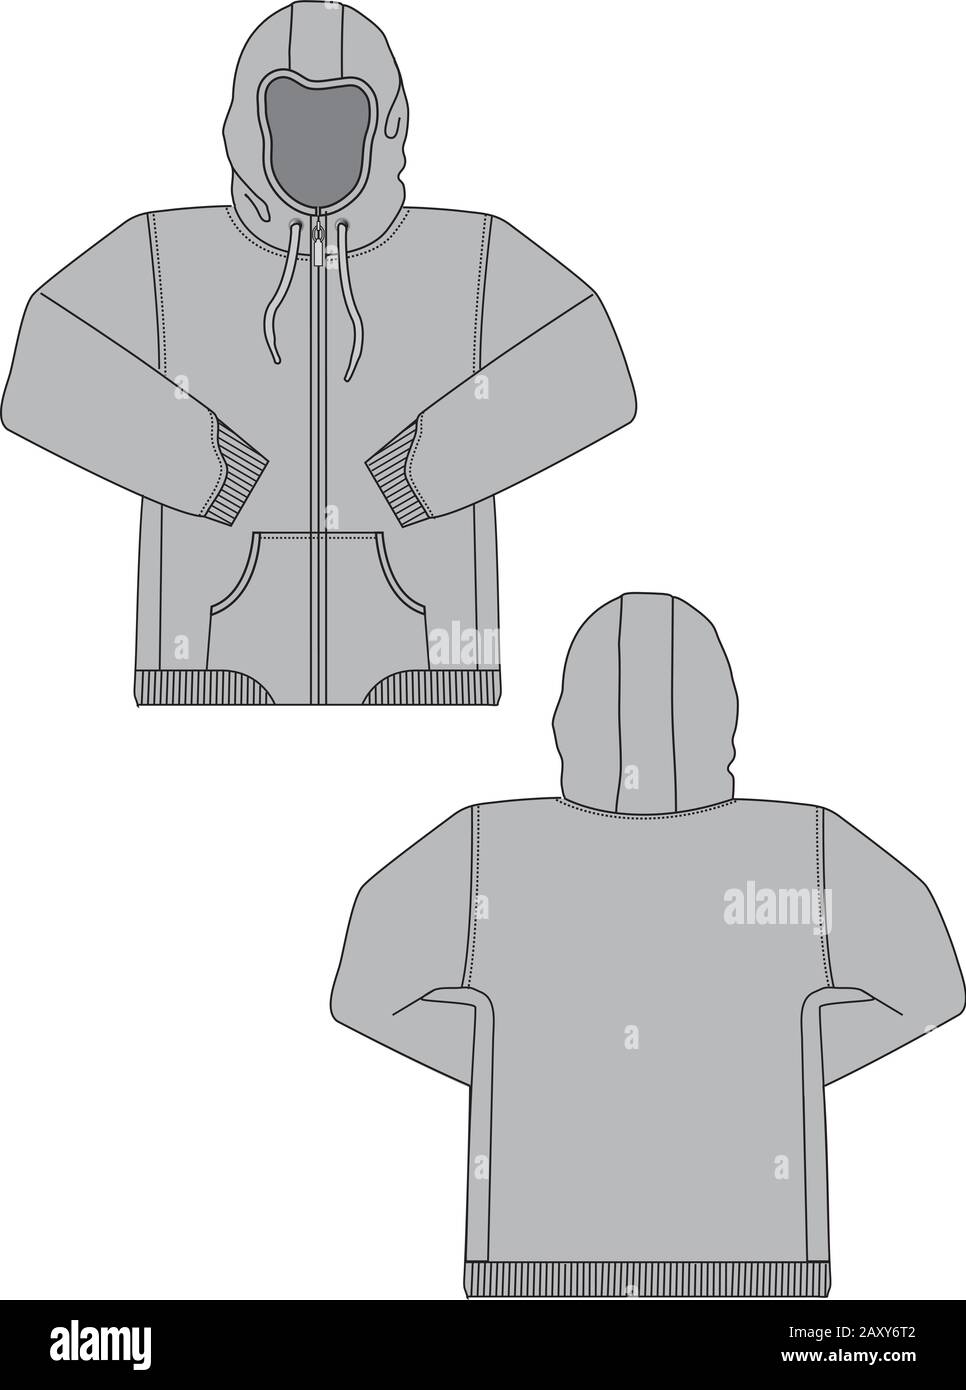 Vector Illustration of hoodie (sweatshirt) Stock Vector